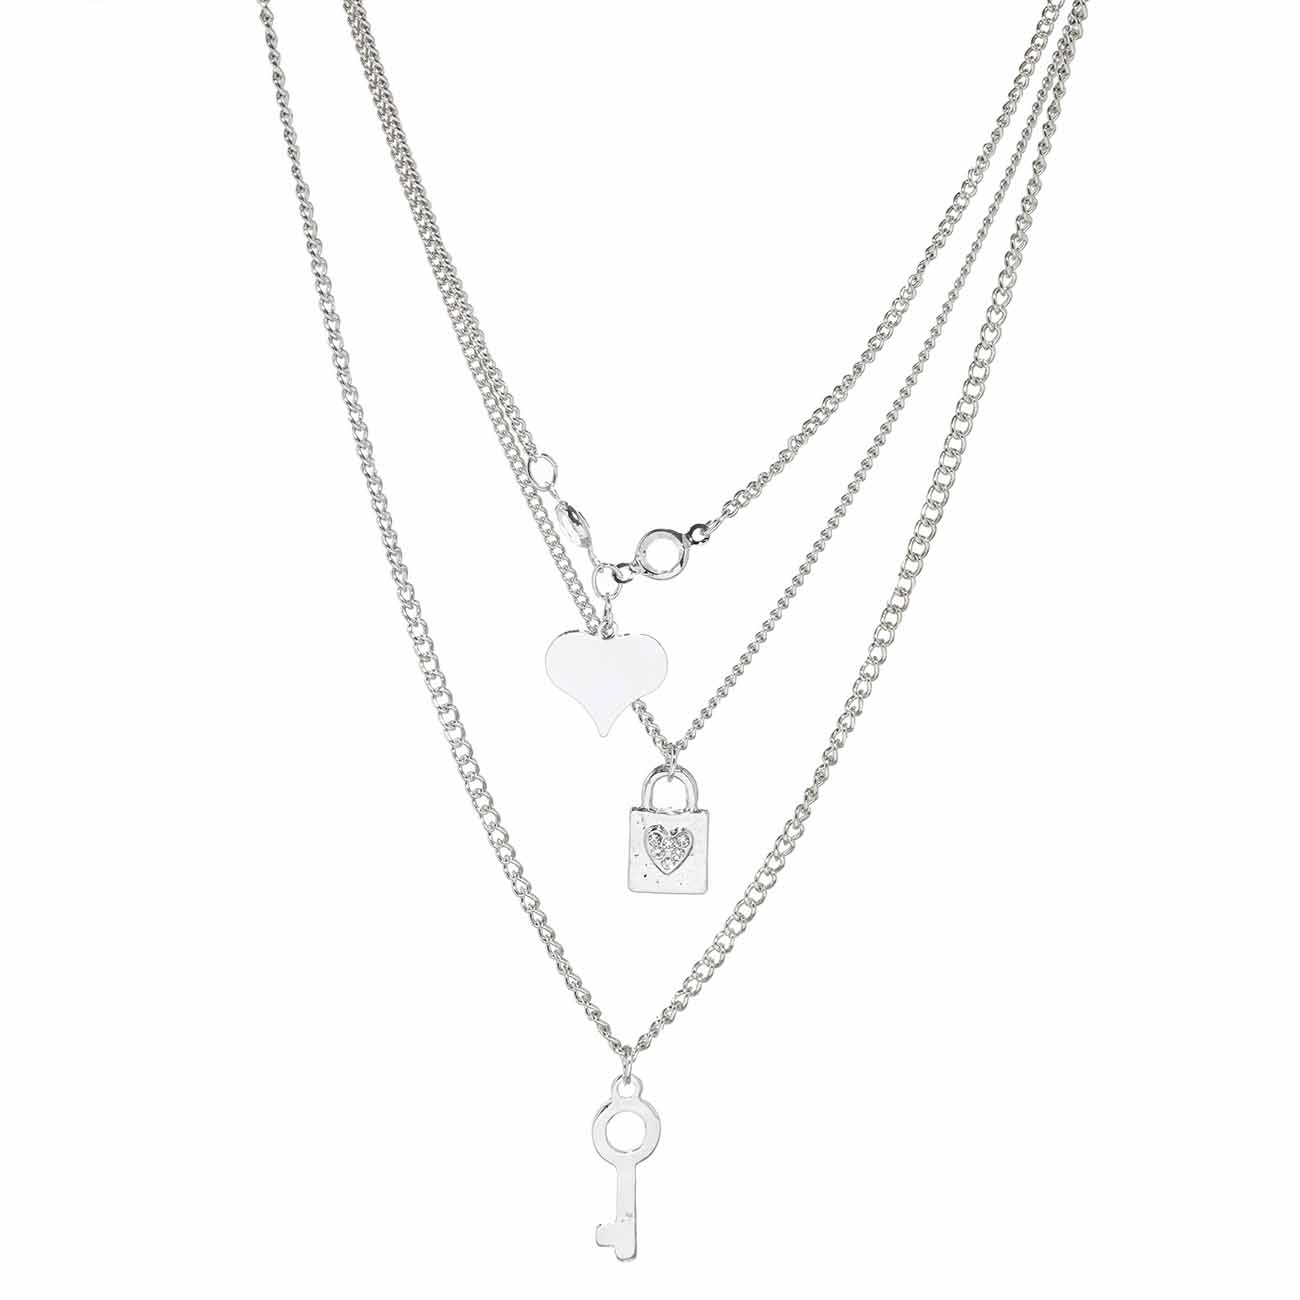 Набор цепочек, 3 шт, с подвесками, металл/стразы, серебристый, Ключик/Сердце, Jewelry изображение № 2